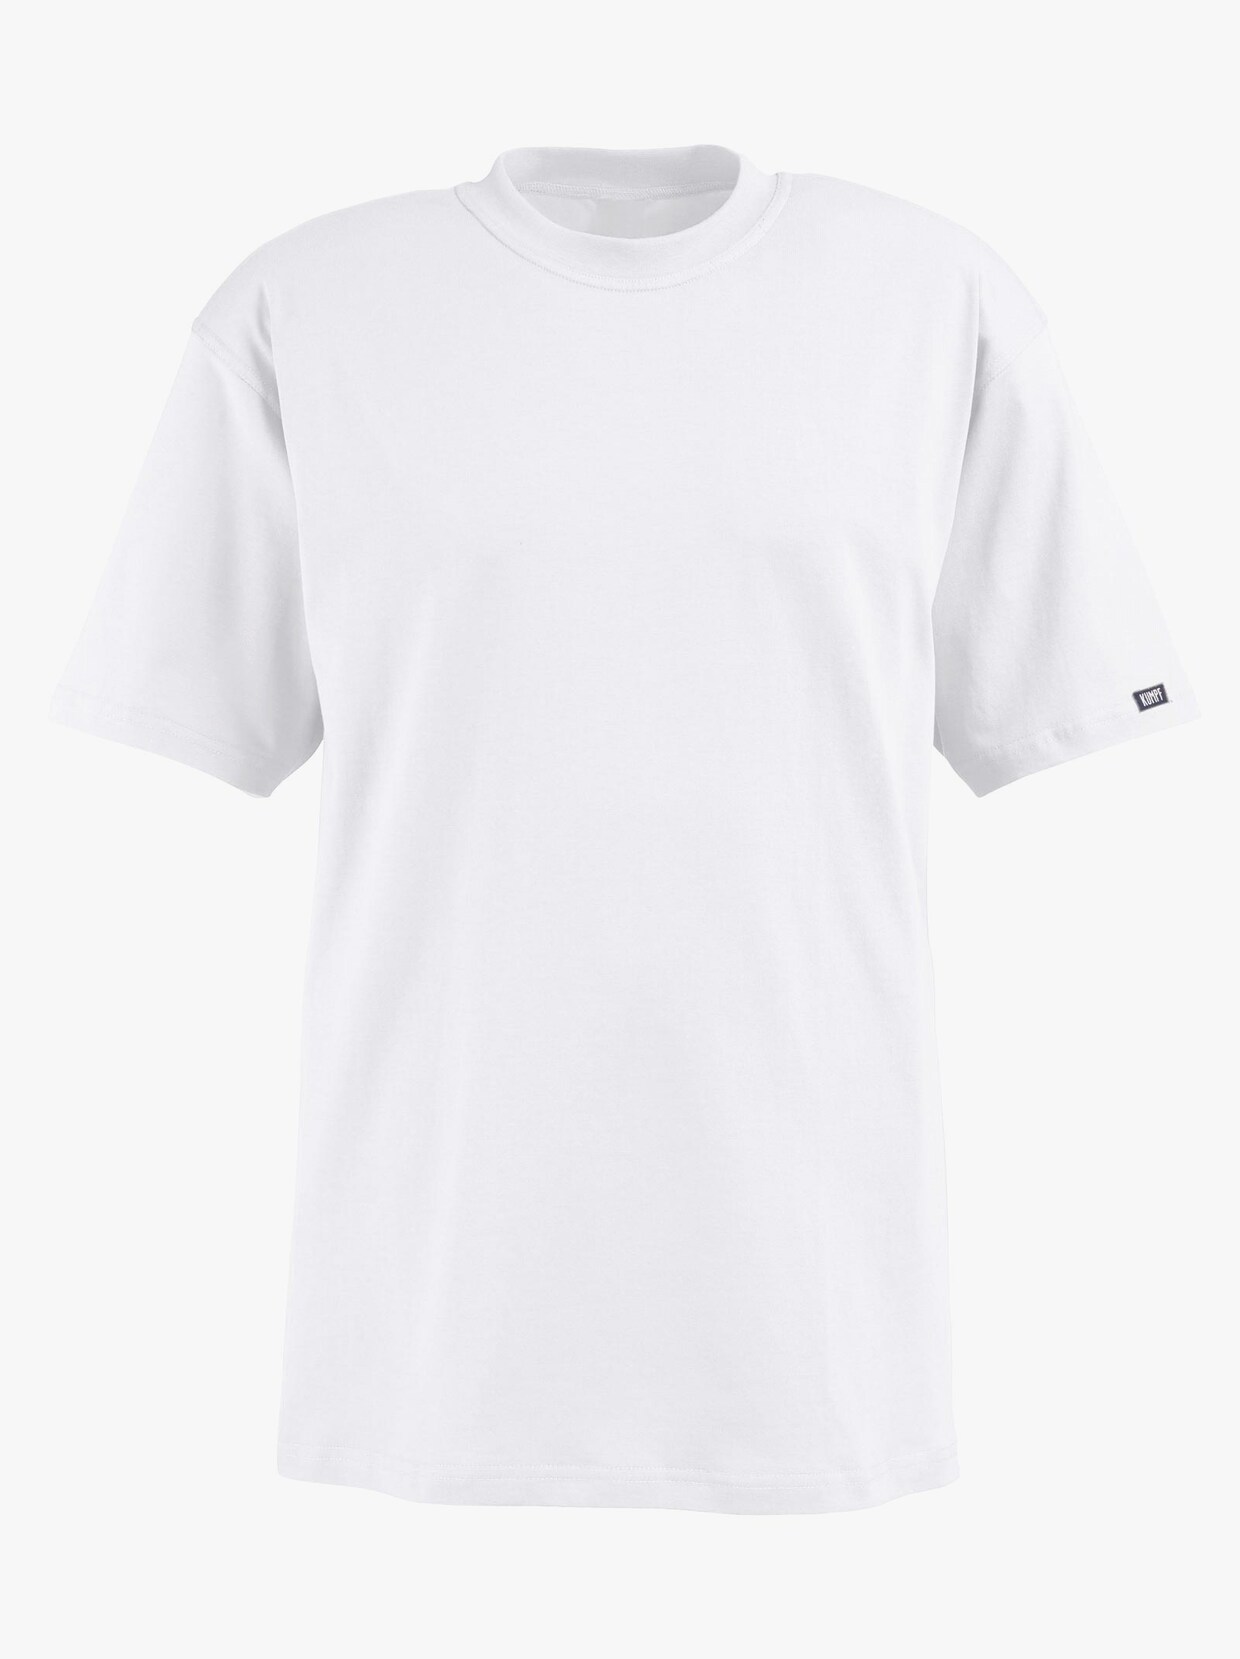 Kumpf Shirt - weiß + khaki